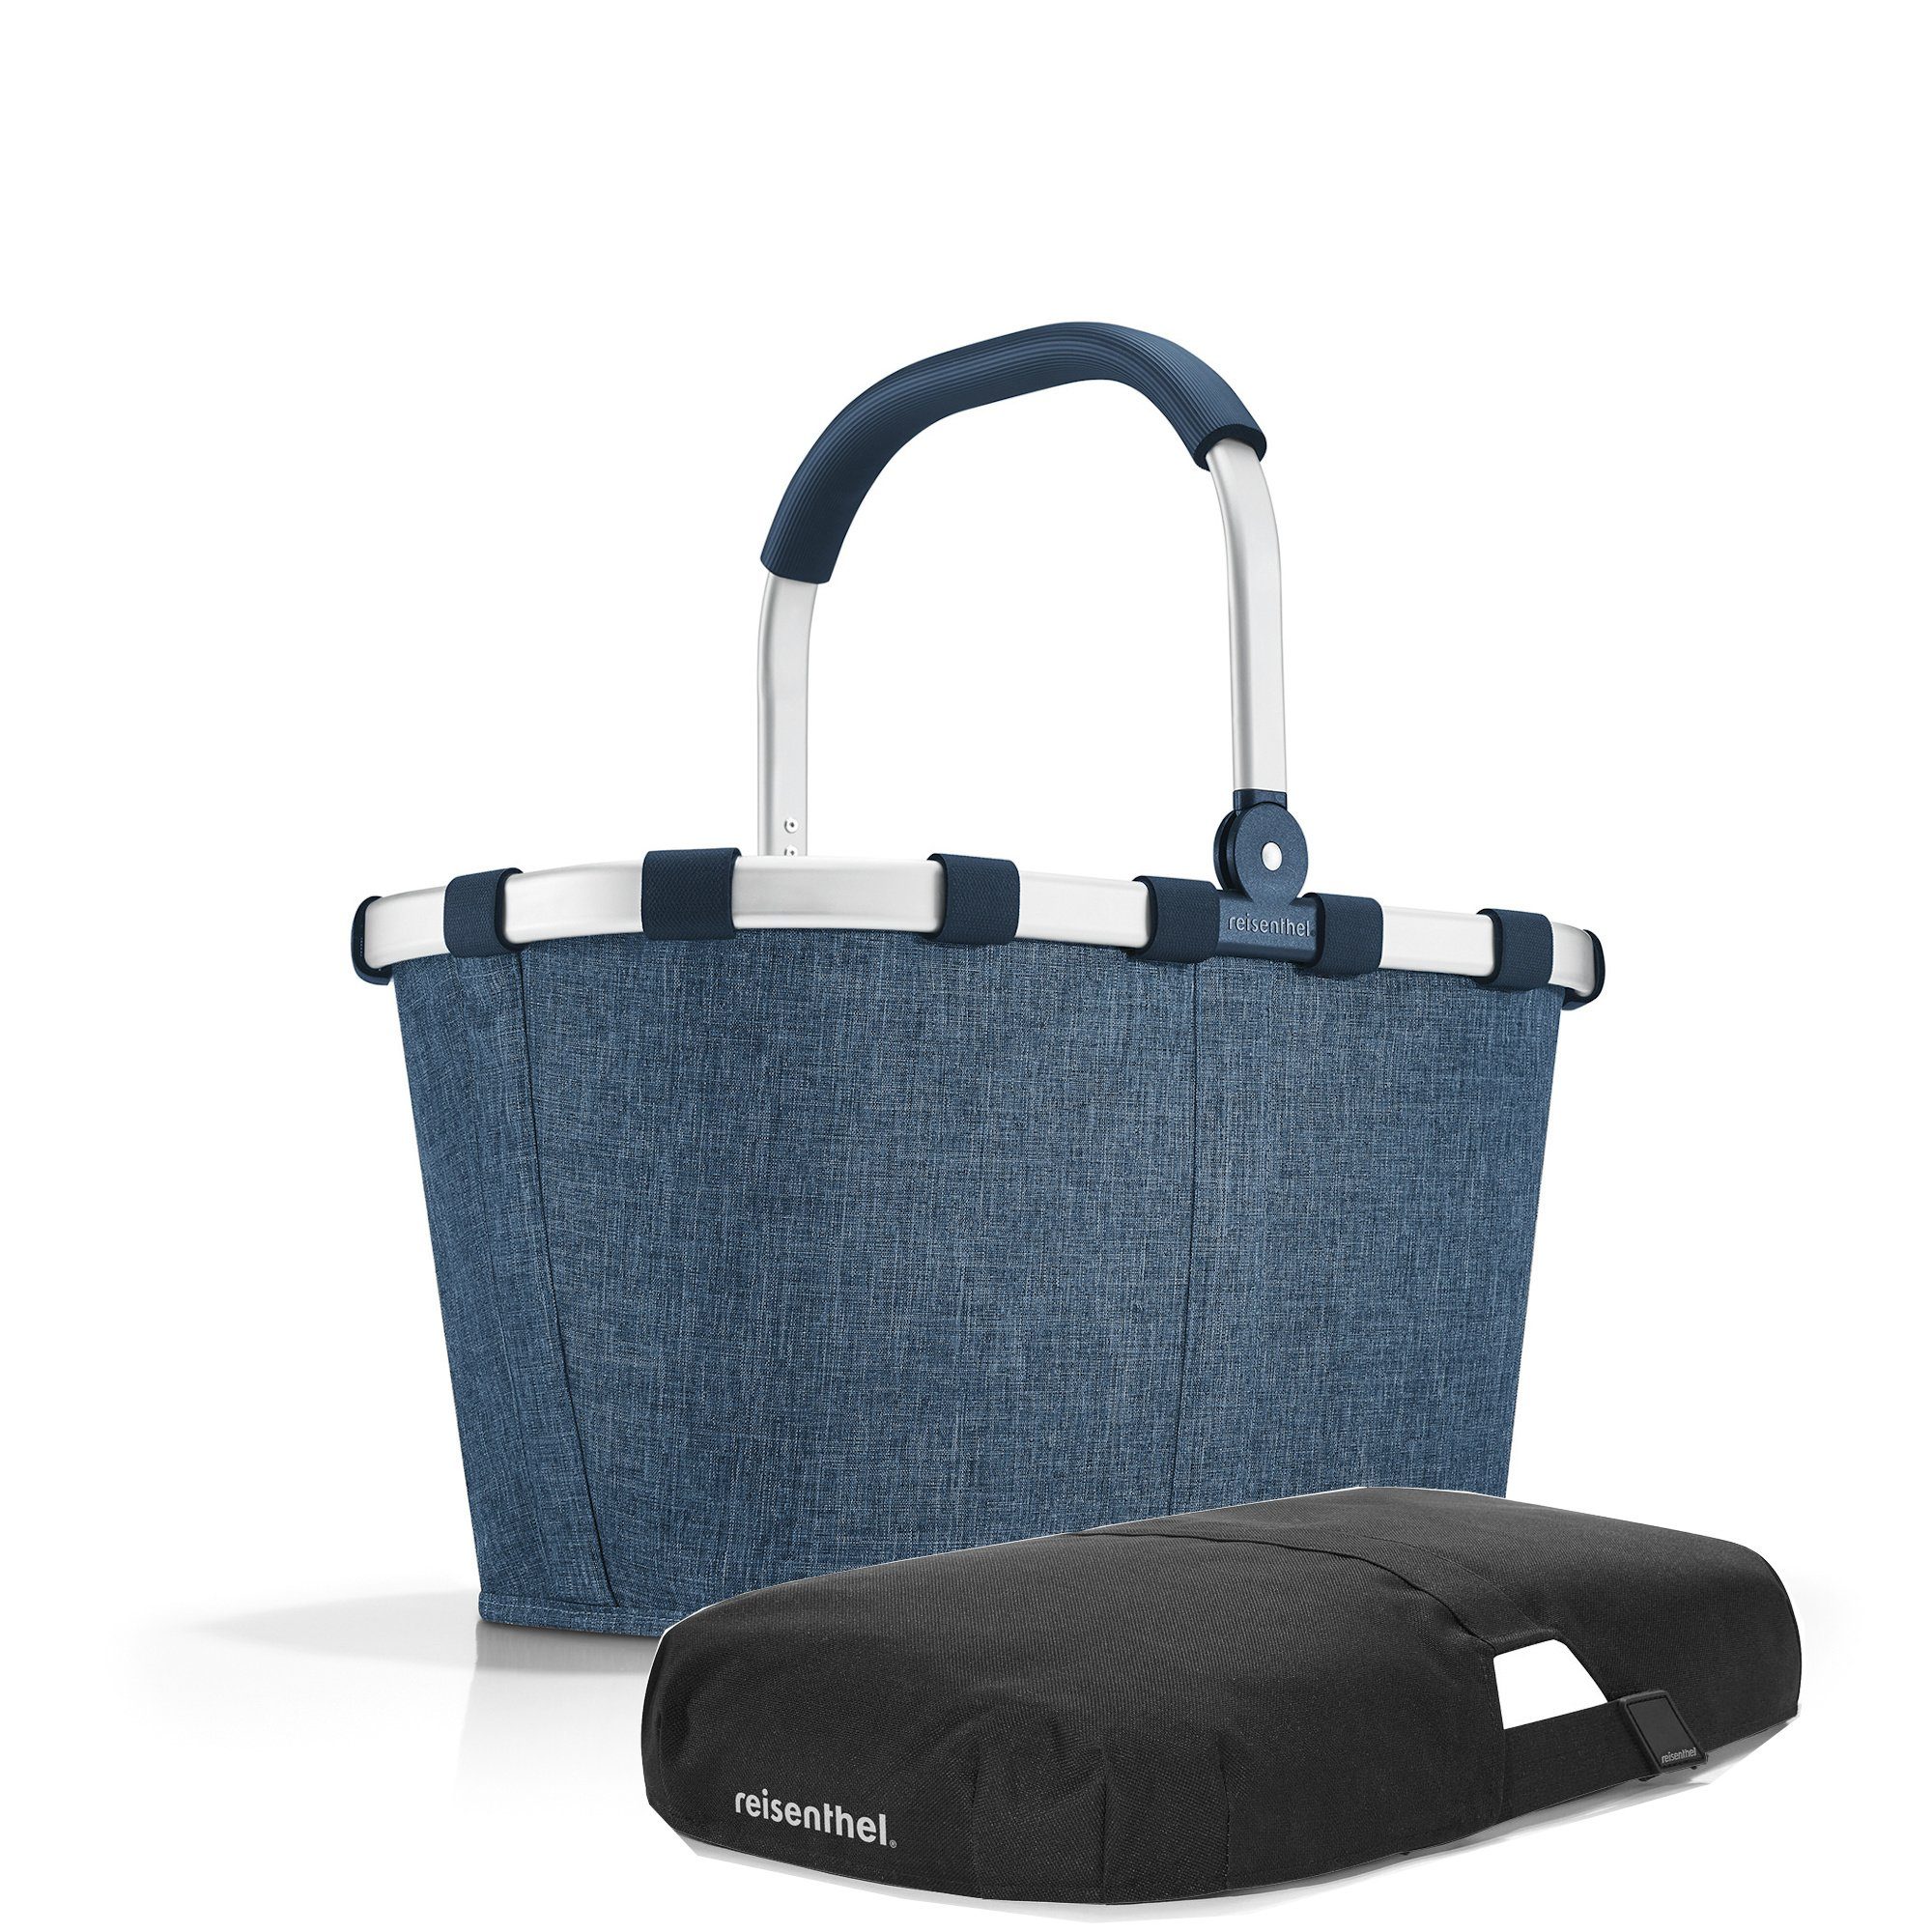 REISENTHEL® Einkaufskorb carrybag, reisenthel carrybag + cover Einkaufskorb Picknickkorb Abdeckung Korb Tragetasche twist blue